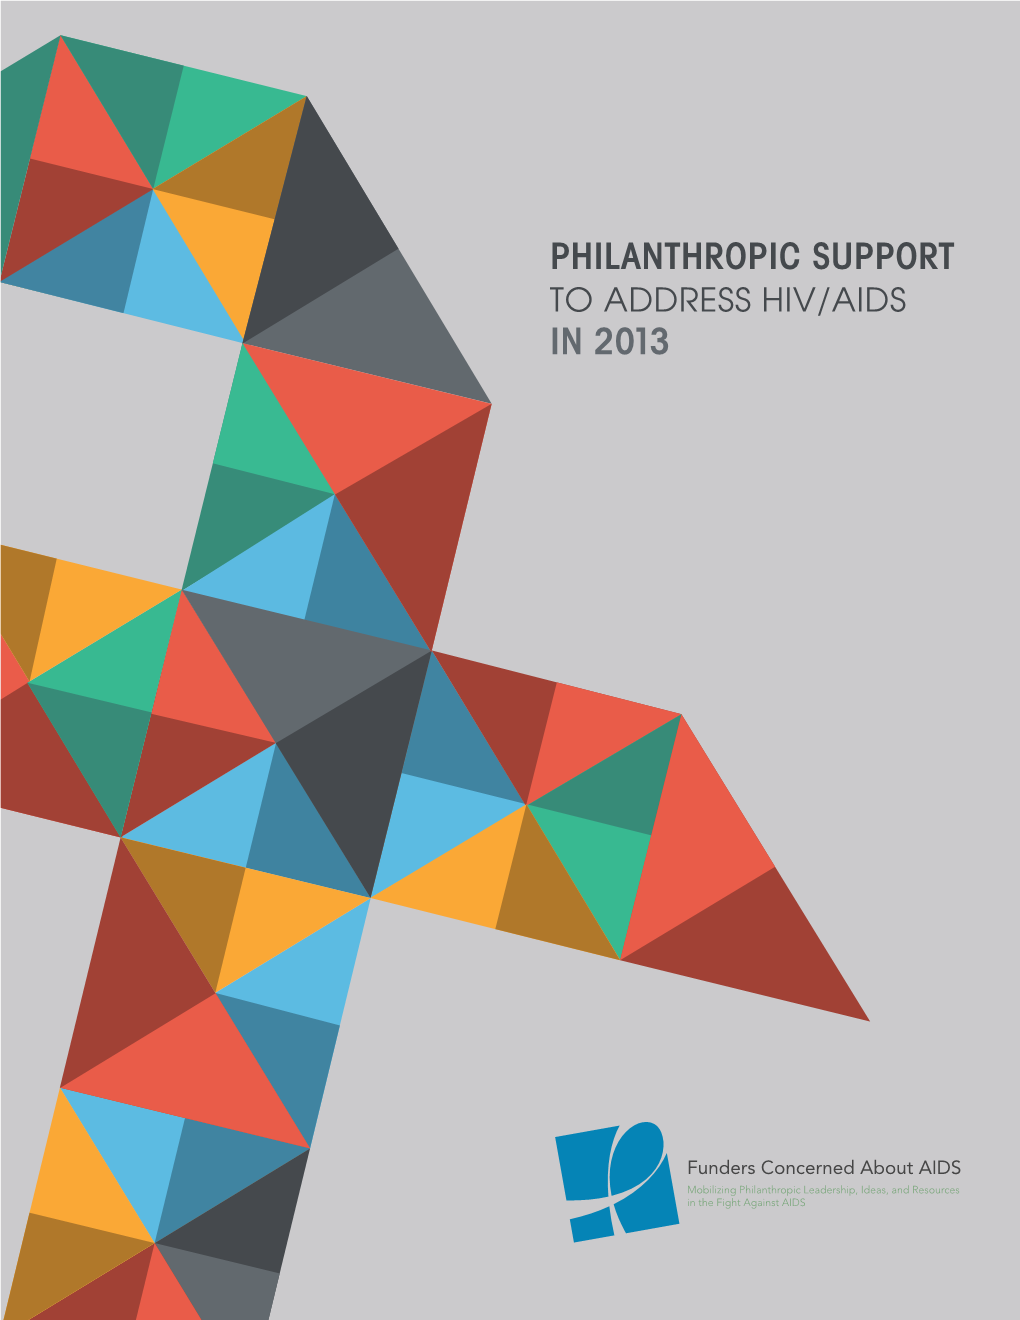 In 2013 Philanthropic Support